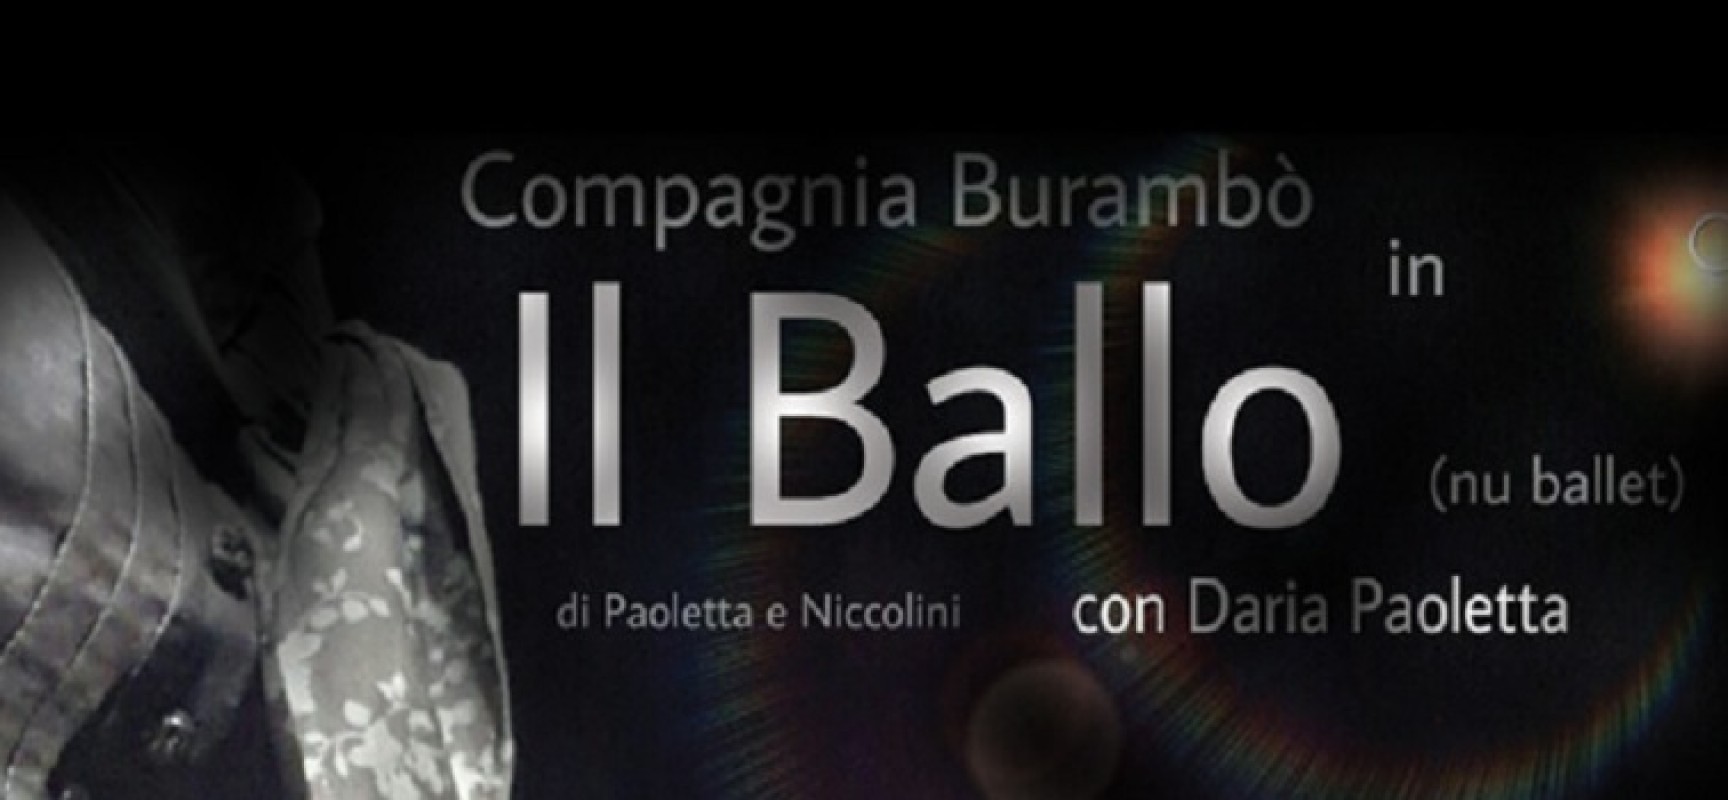 Effetti Collaterali, domenica sera andrà in scena “Il Ballo” con Daria Paoletta